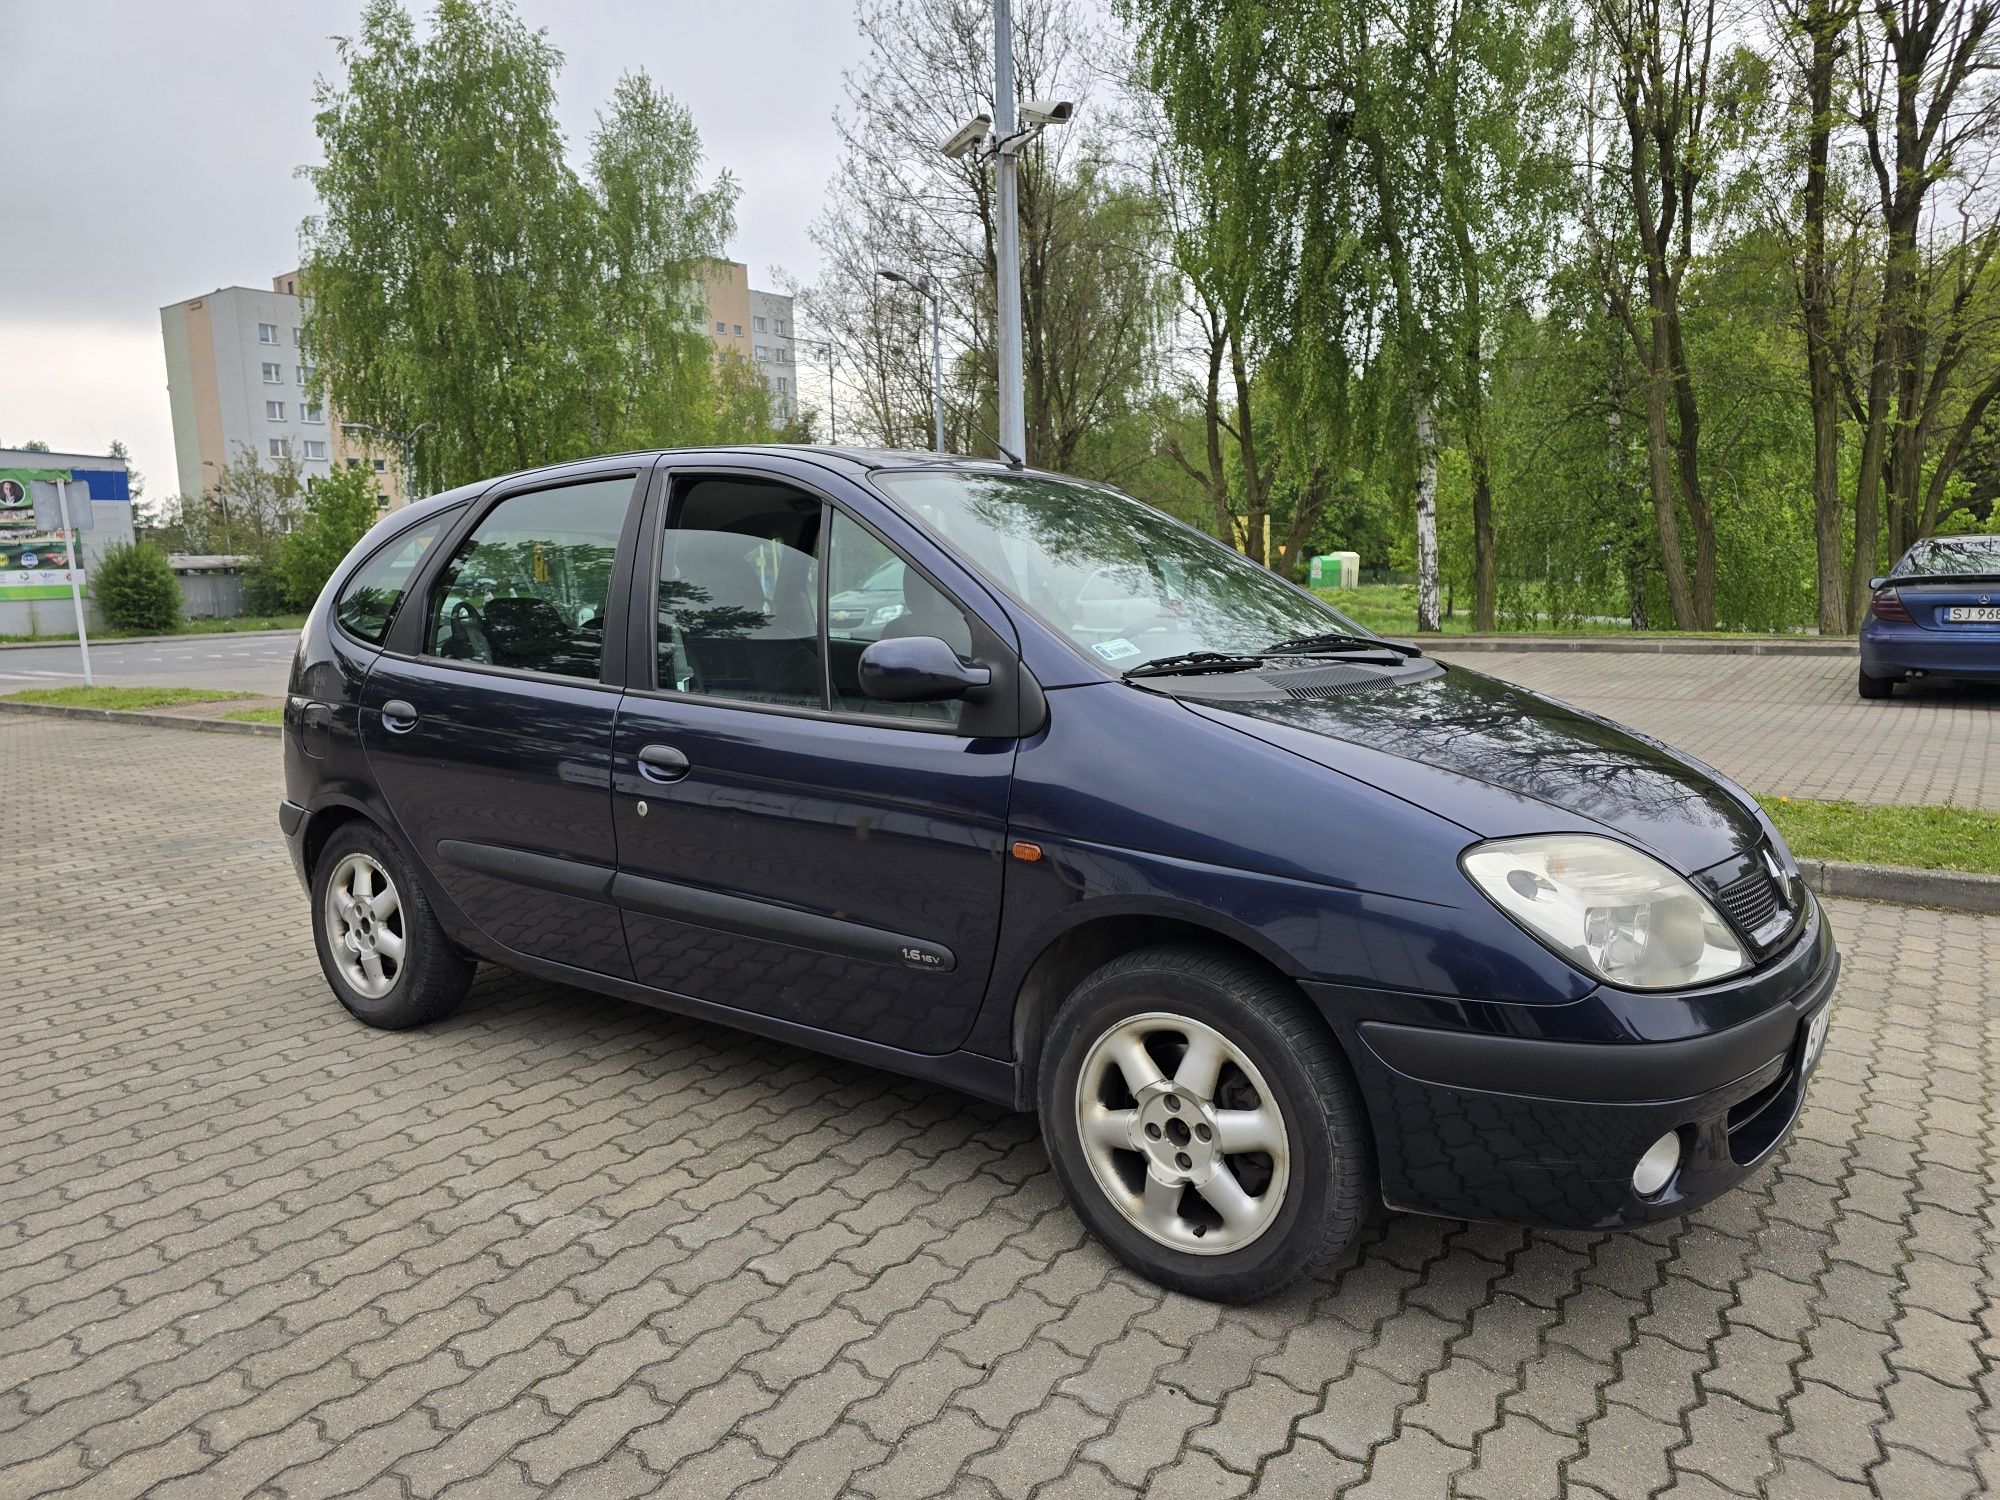 Zadbany Renault Scenic 1.6 - bardzo dobry stan, ważne opłaty, do jazdy